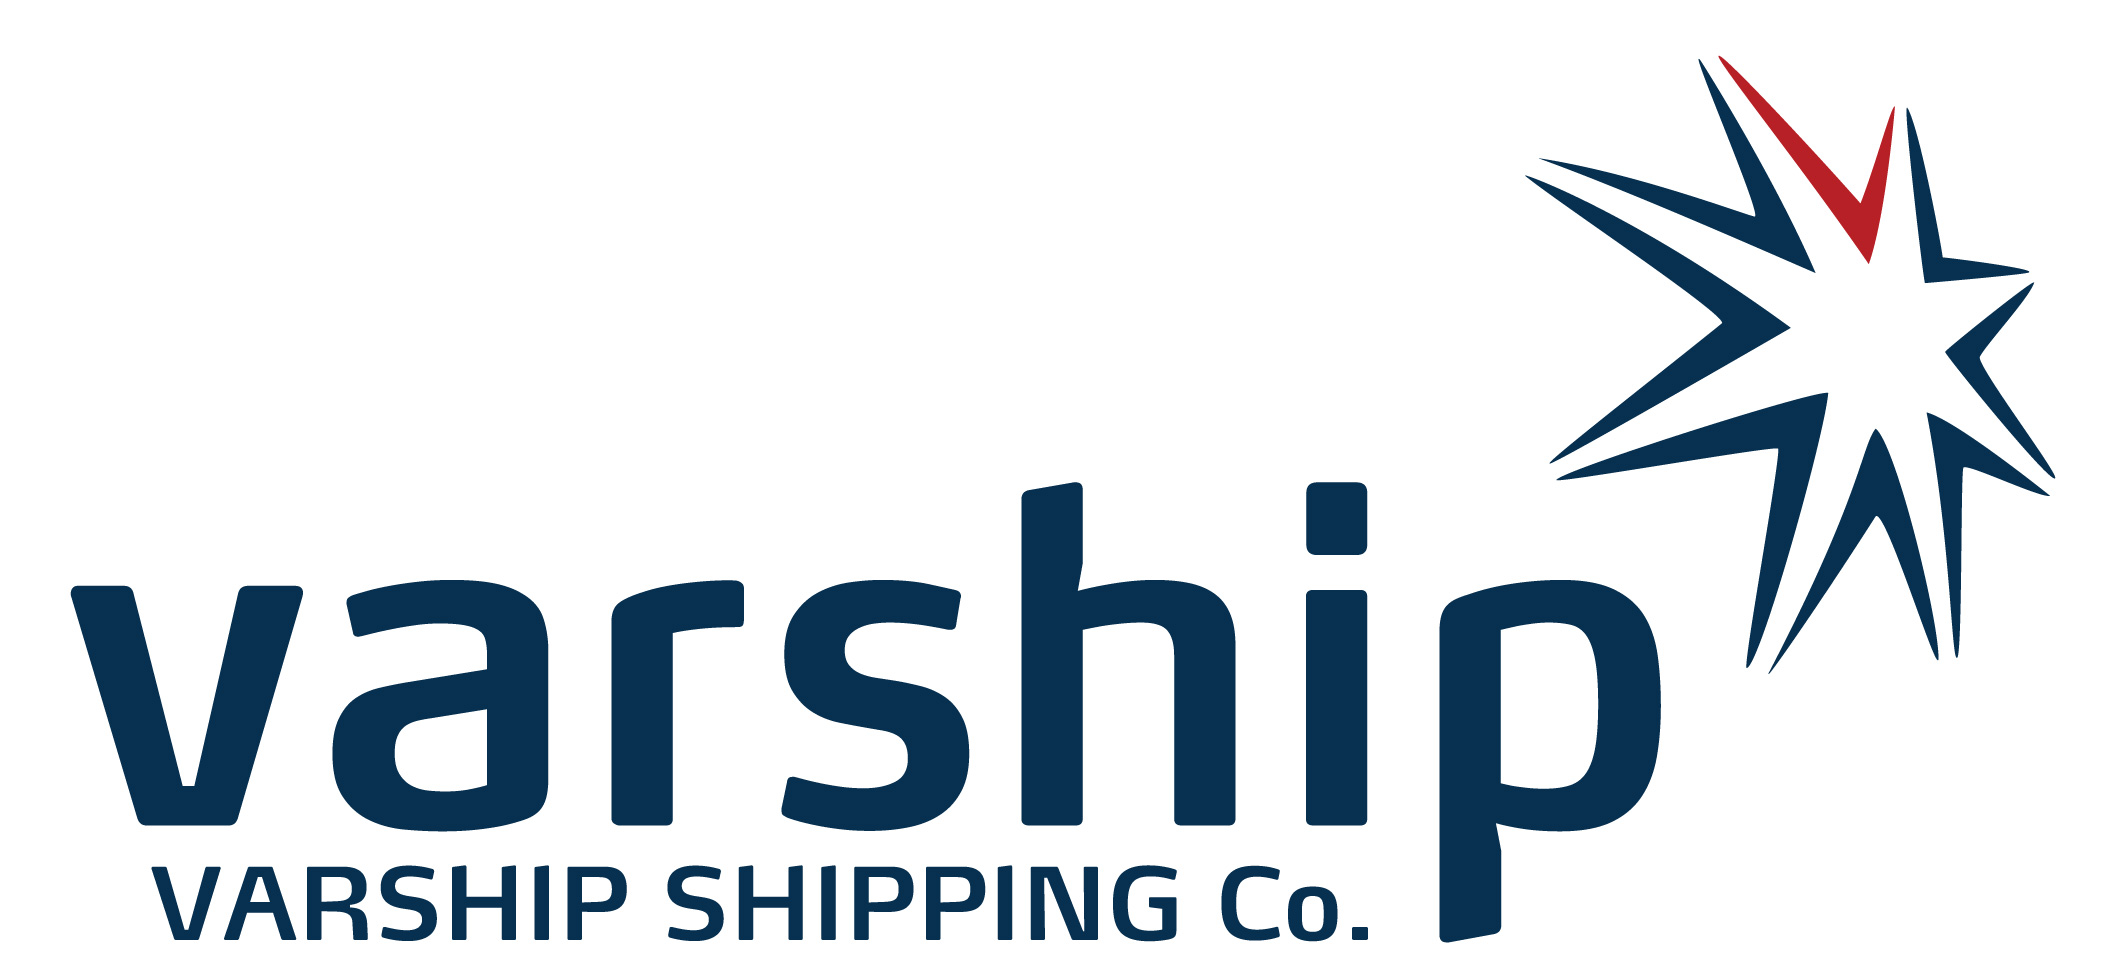 Varship Shipping